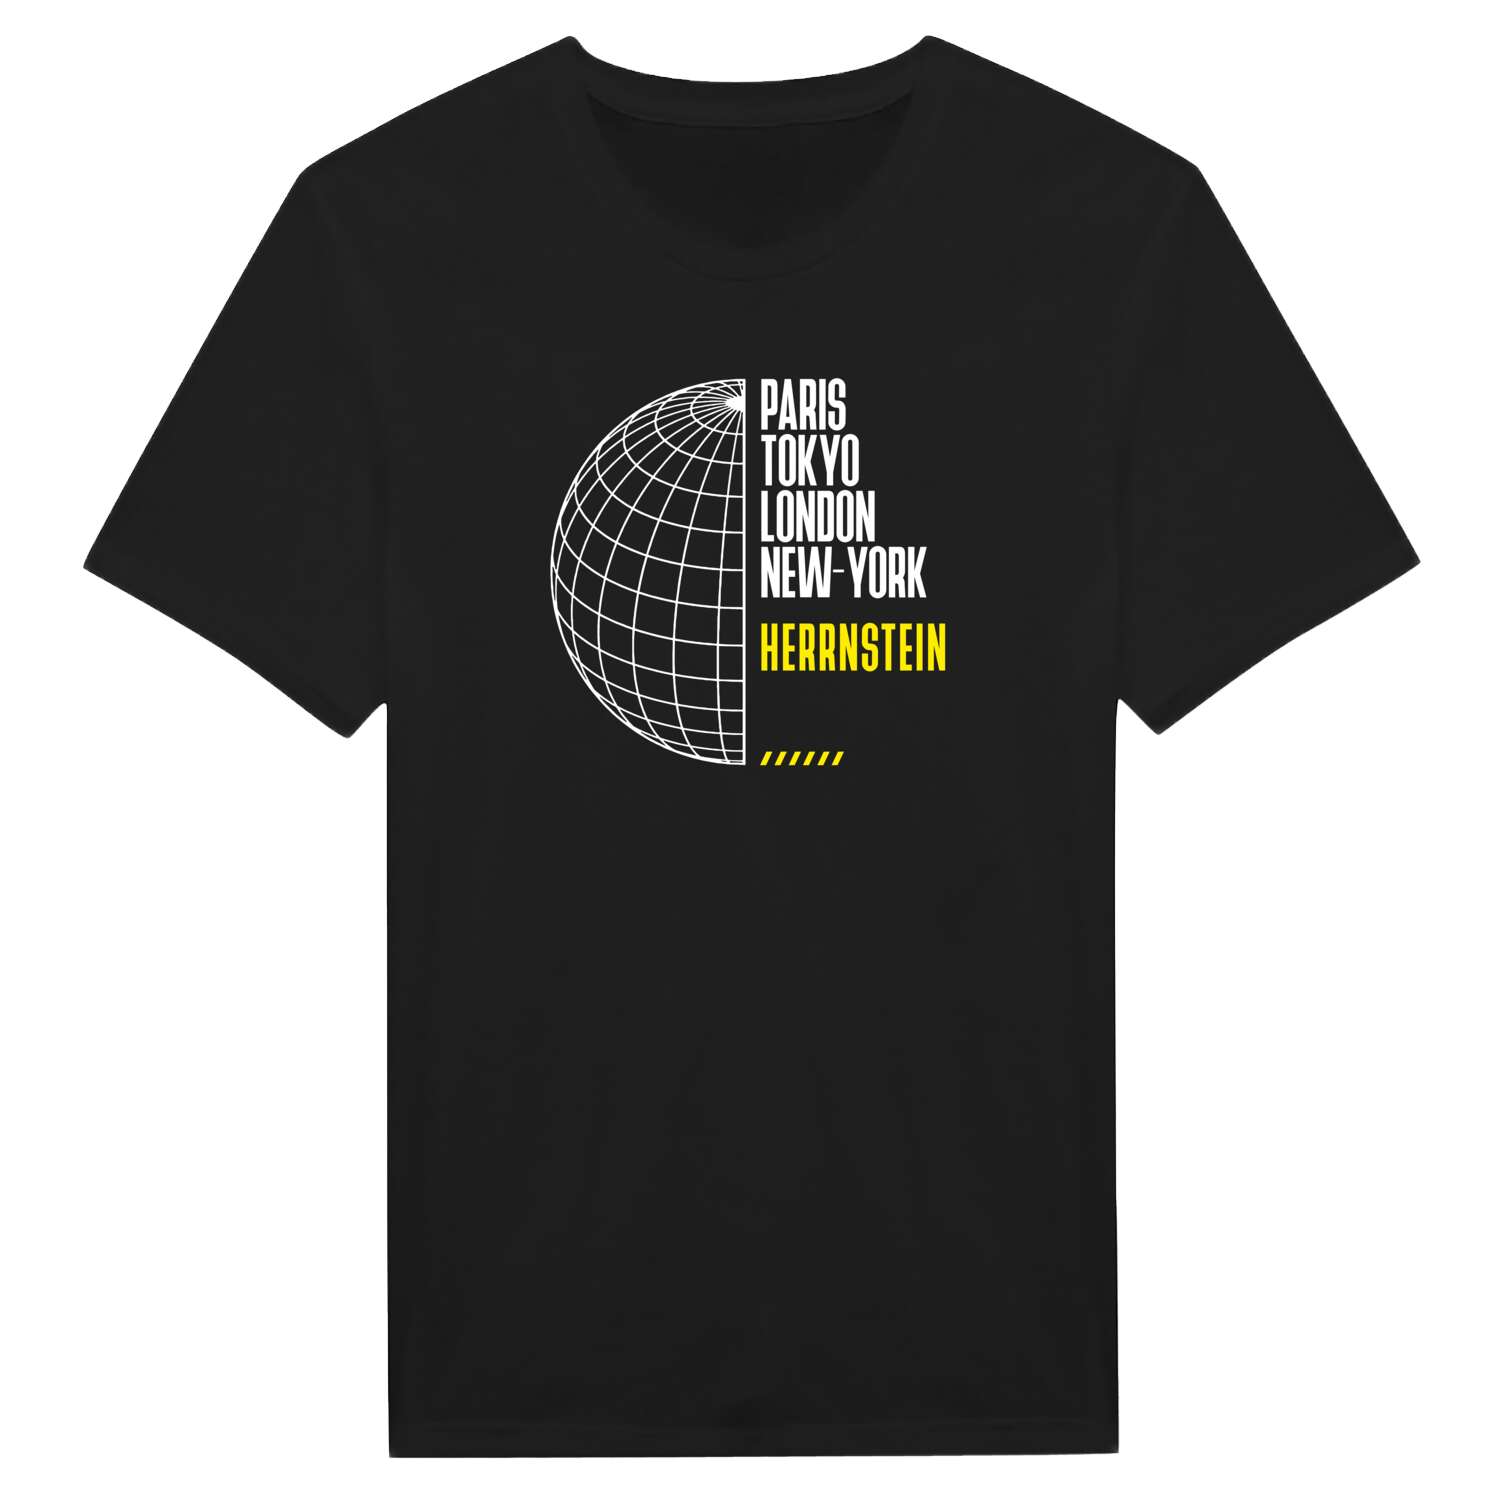 Herrnstein T-Shirt »Paris Tokyo London«